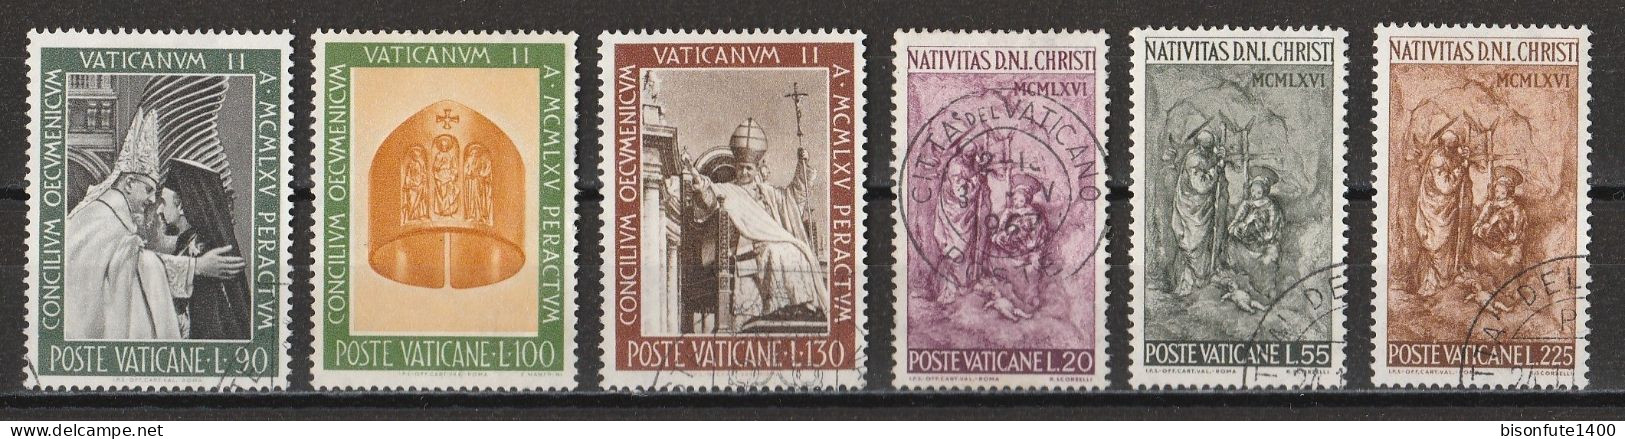 Vatican 1966 : Timbres Yvert & Tellier N° 451 - 452 - 453 - 454 - 455 - 456 - 457 - 458 - 459 - 460 - 461 - 462 -....... - Oblitérés